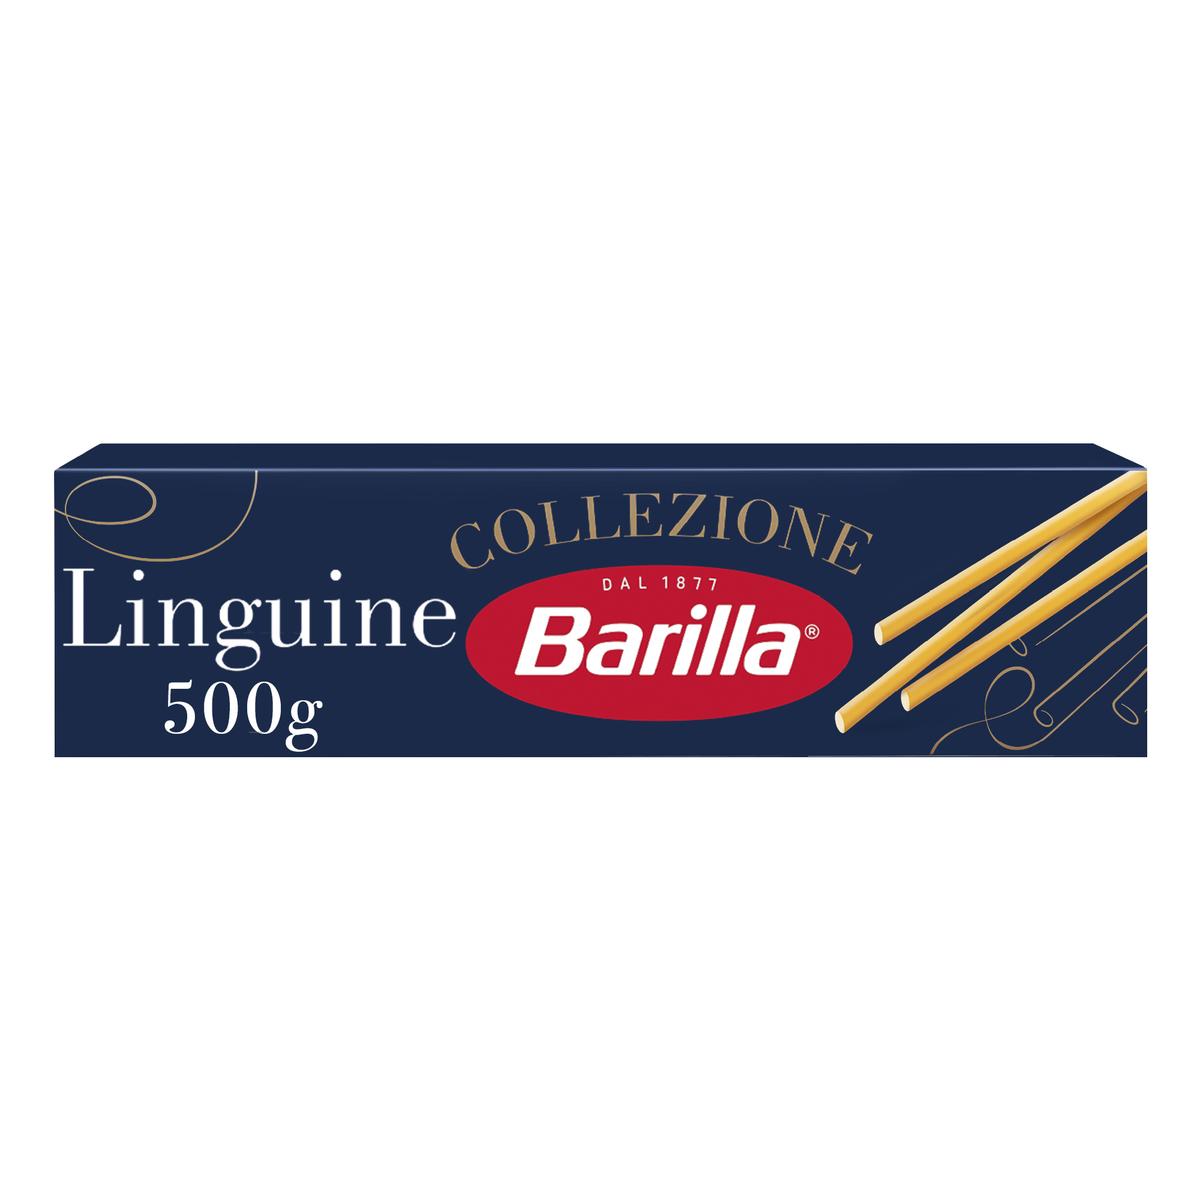 Livraison à domicile Promotion Barilla Collezione Pâtes Mafaldine, 500g